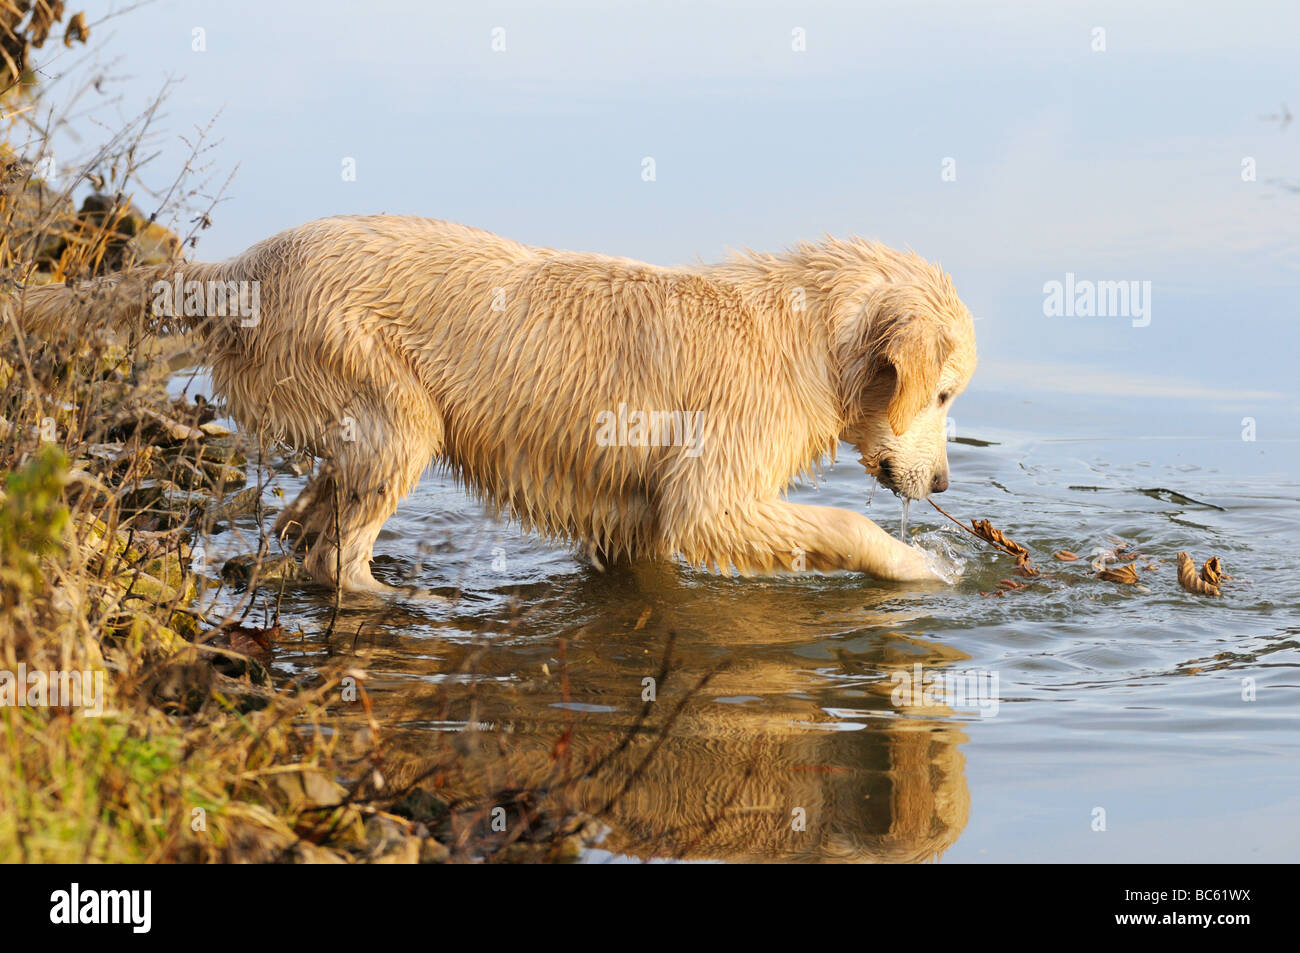 Golden Retriever Welpe spielen im Wasser, Franken, Bayern, Deutschland  Stockfotografie - Alamy